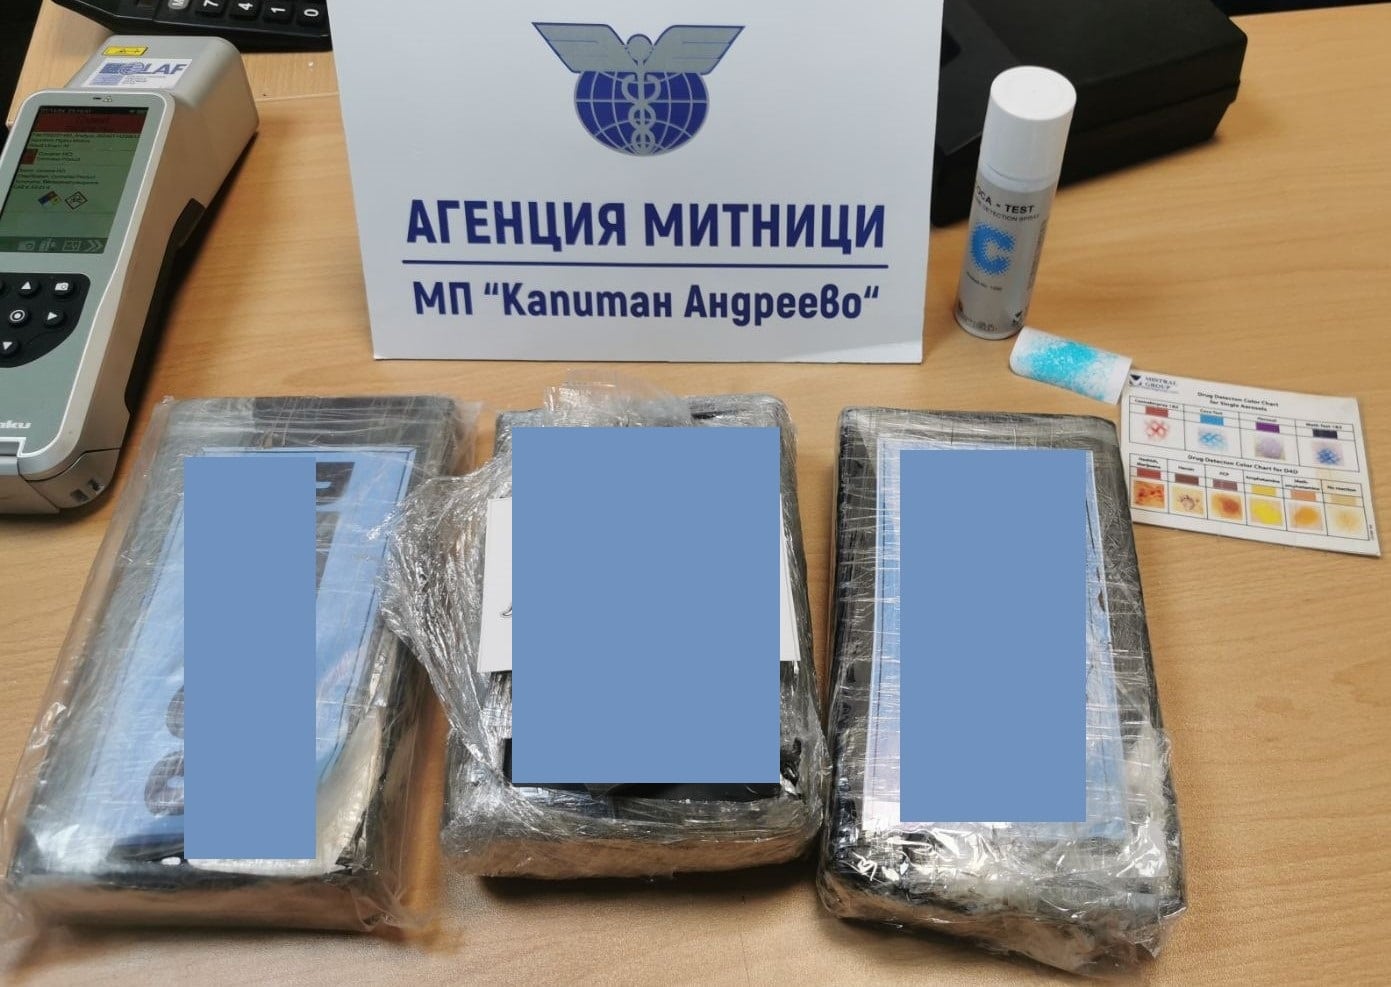 Кокаин Снимка Агенция Митници Митническите служители откриха над 3 кг кокаин